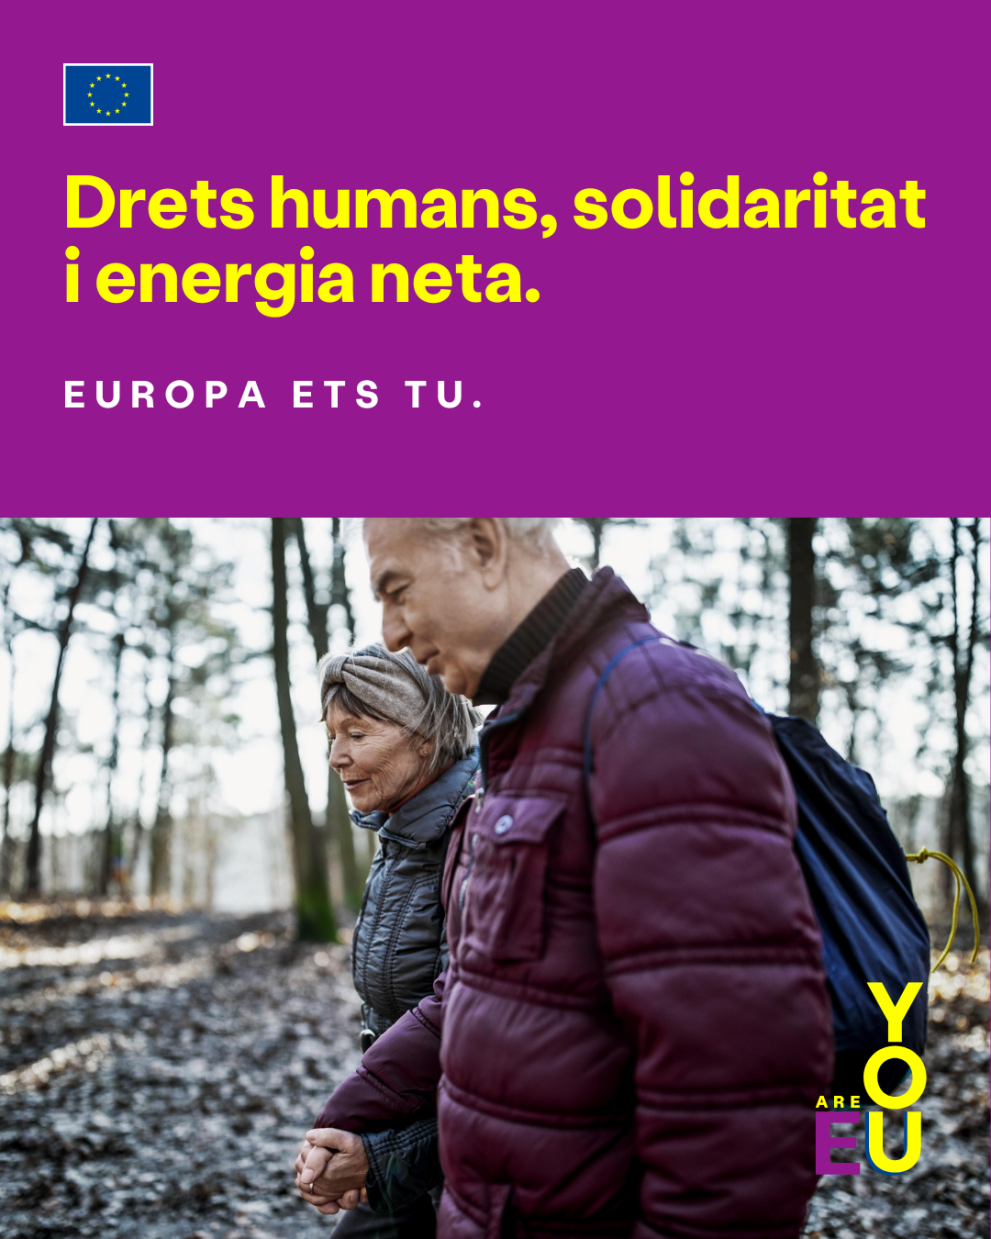 Drets humans solidaritat i energia neta 